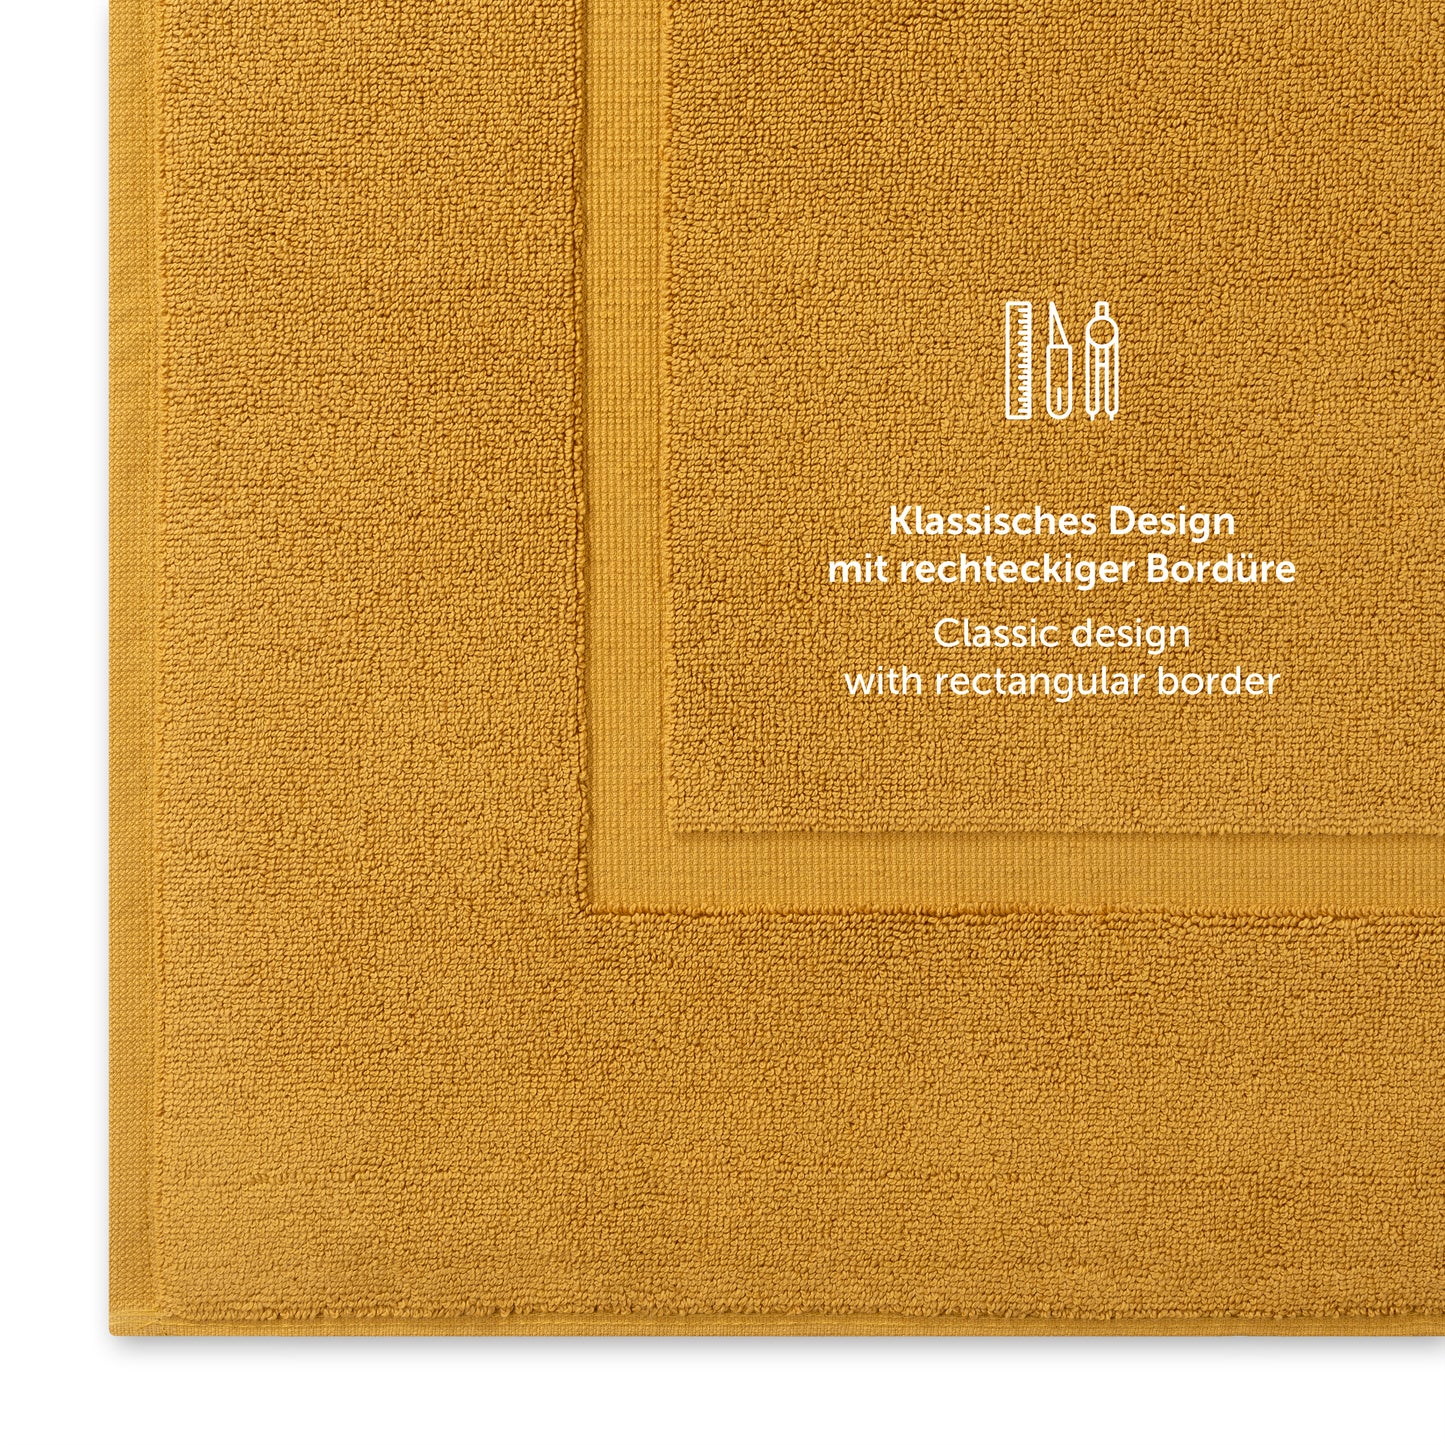 Gelbes Handtuch mit klassischem Design und Bordürendetail.